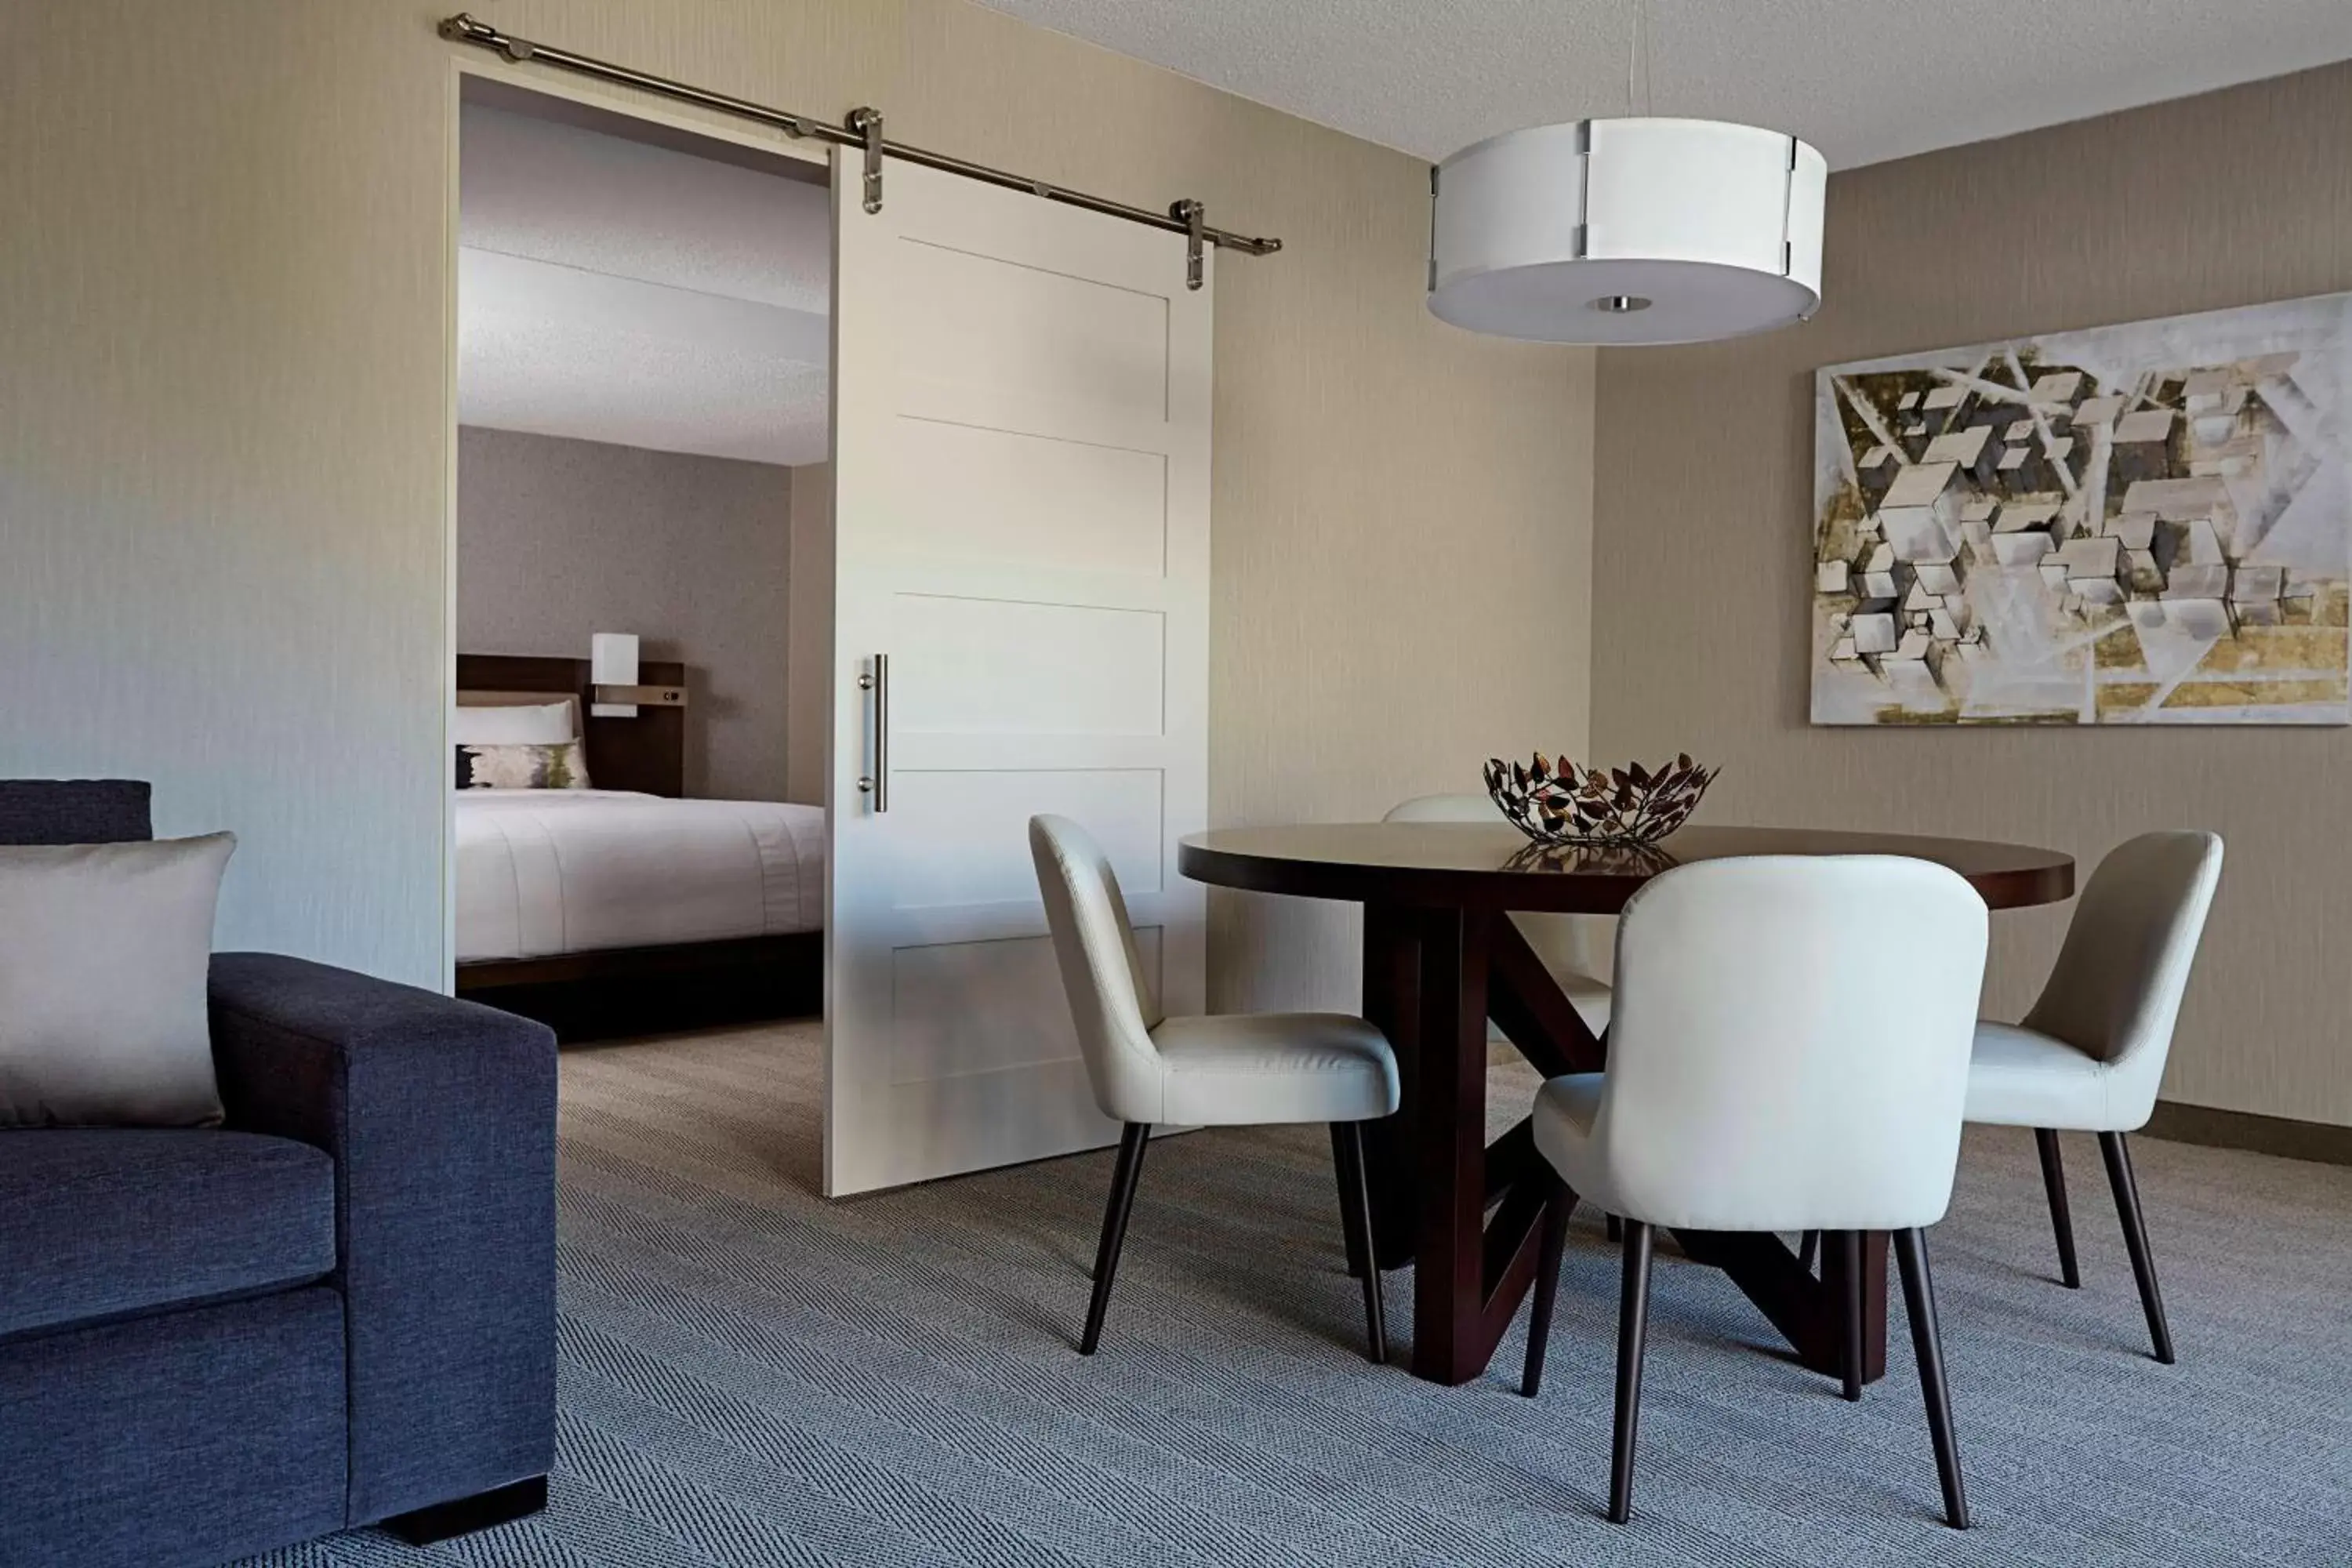 Bedroom, Dining Area in Bethesda Marriott